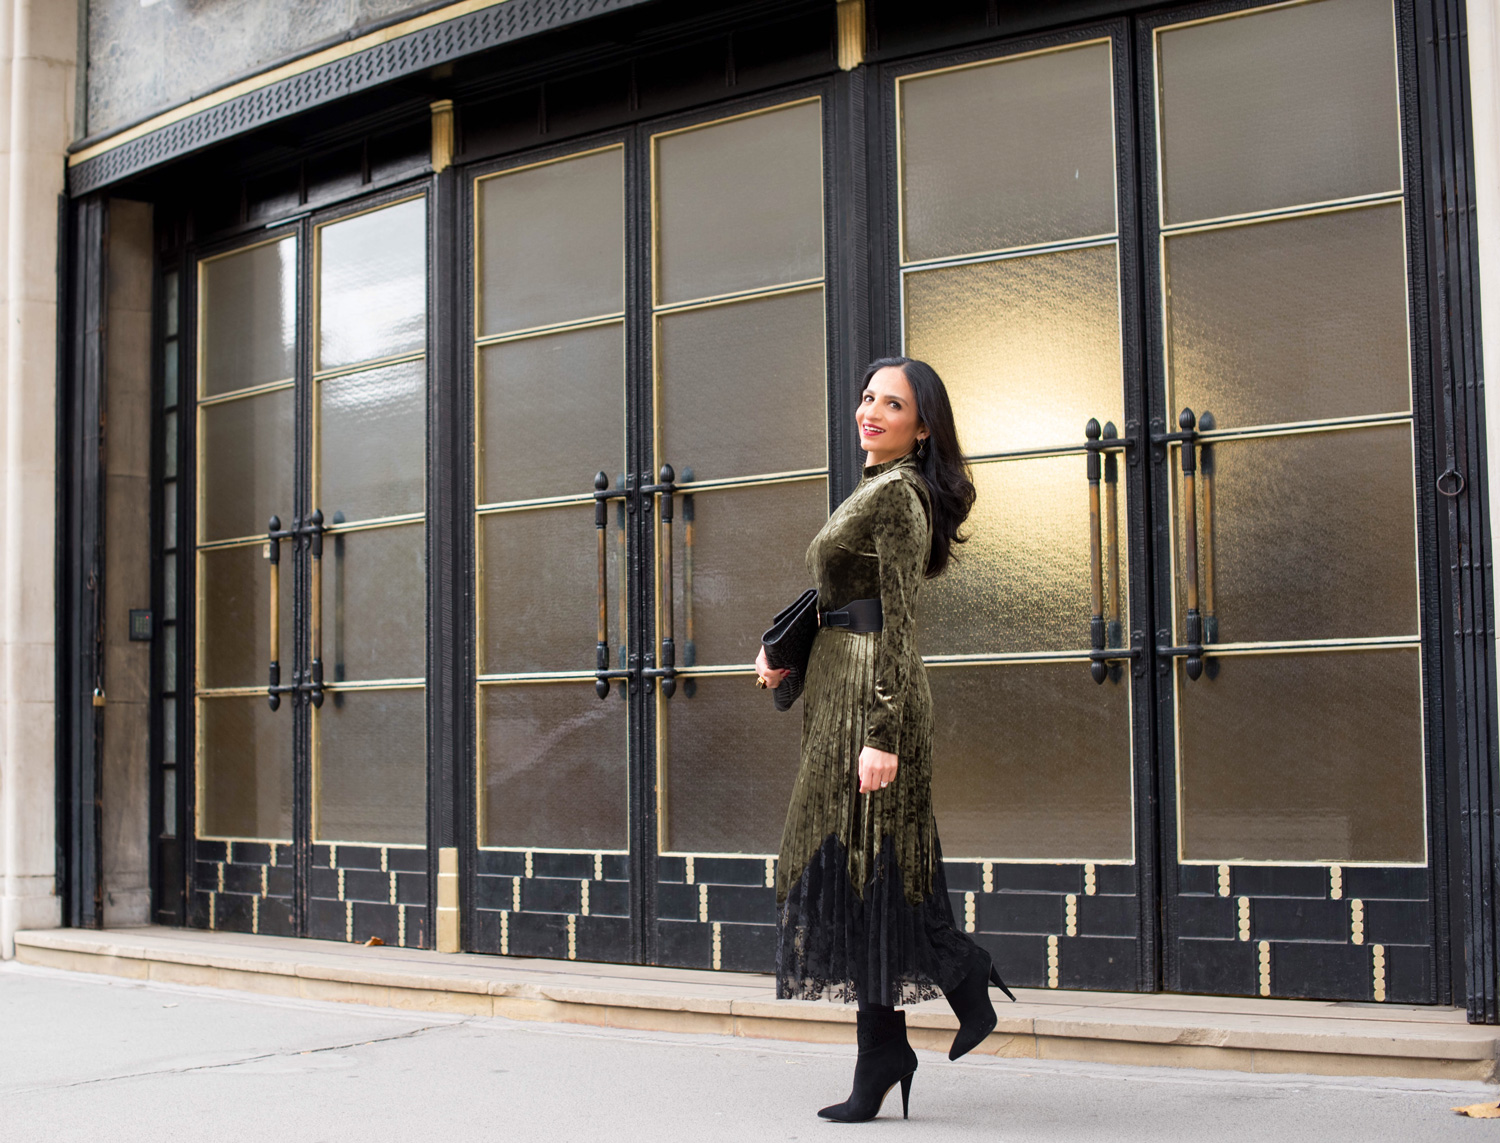 London Winter Style Tips: Velvet Dress; Isha's Verdict